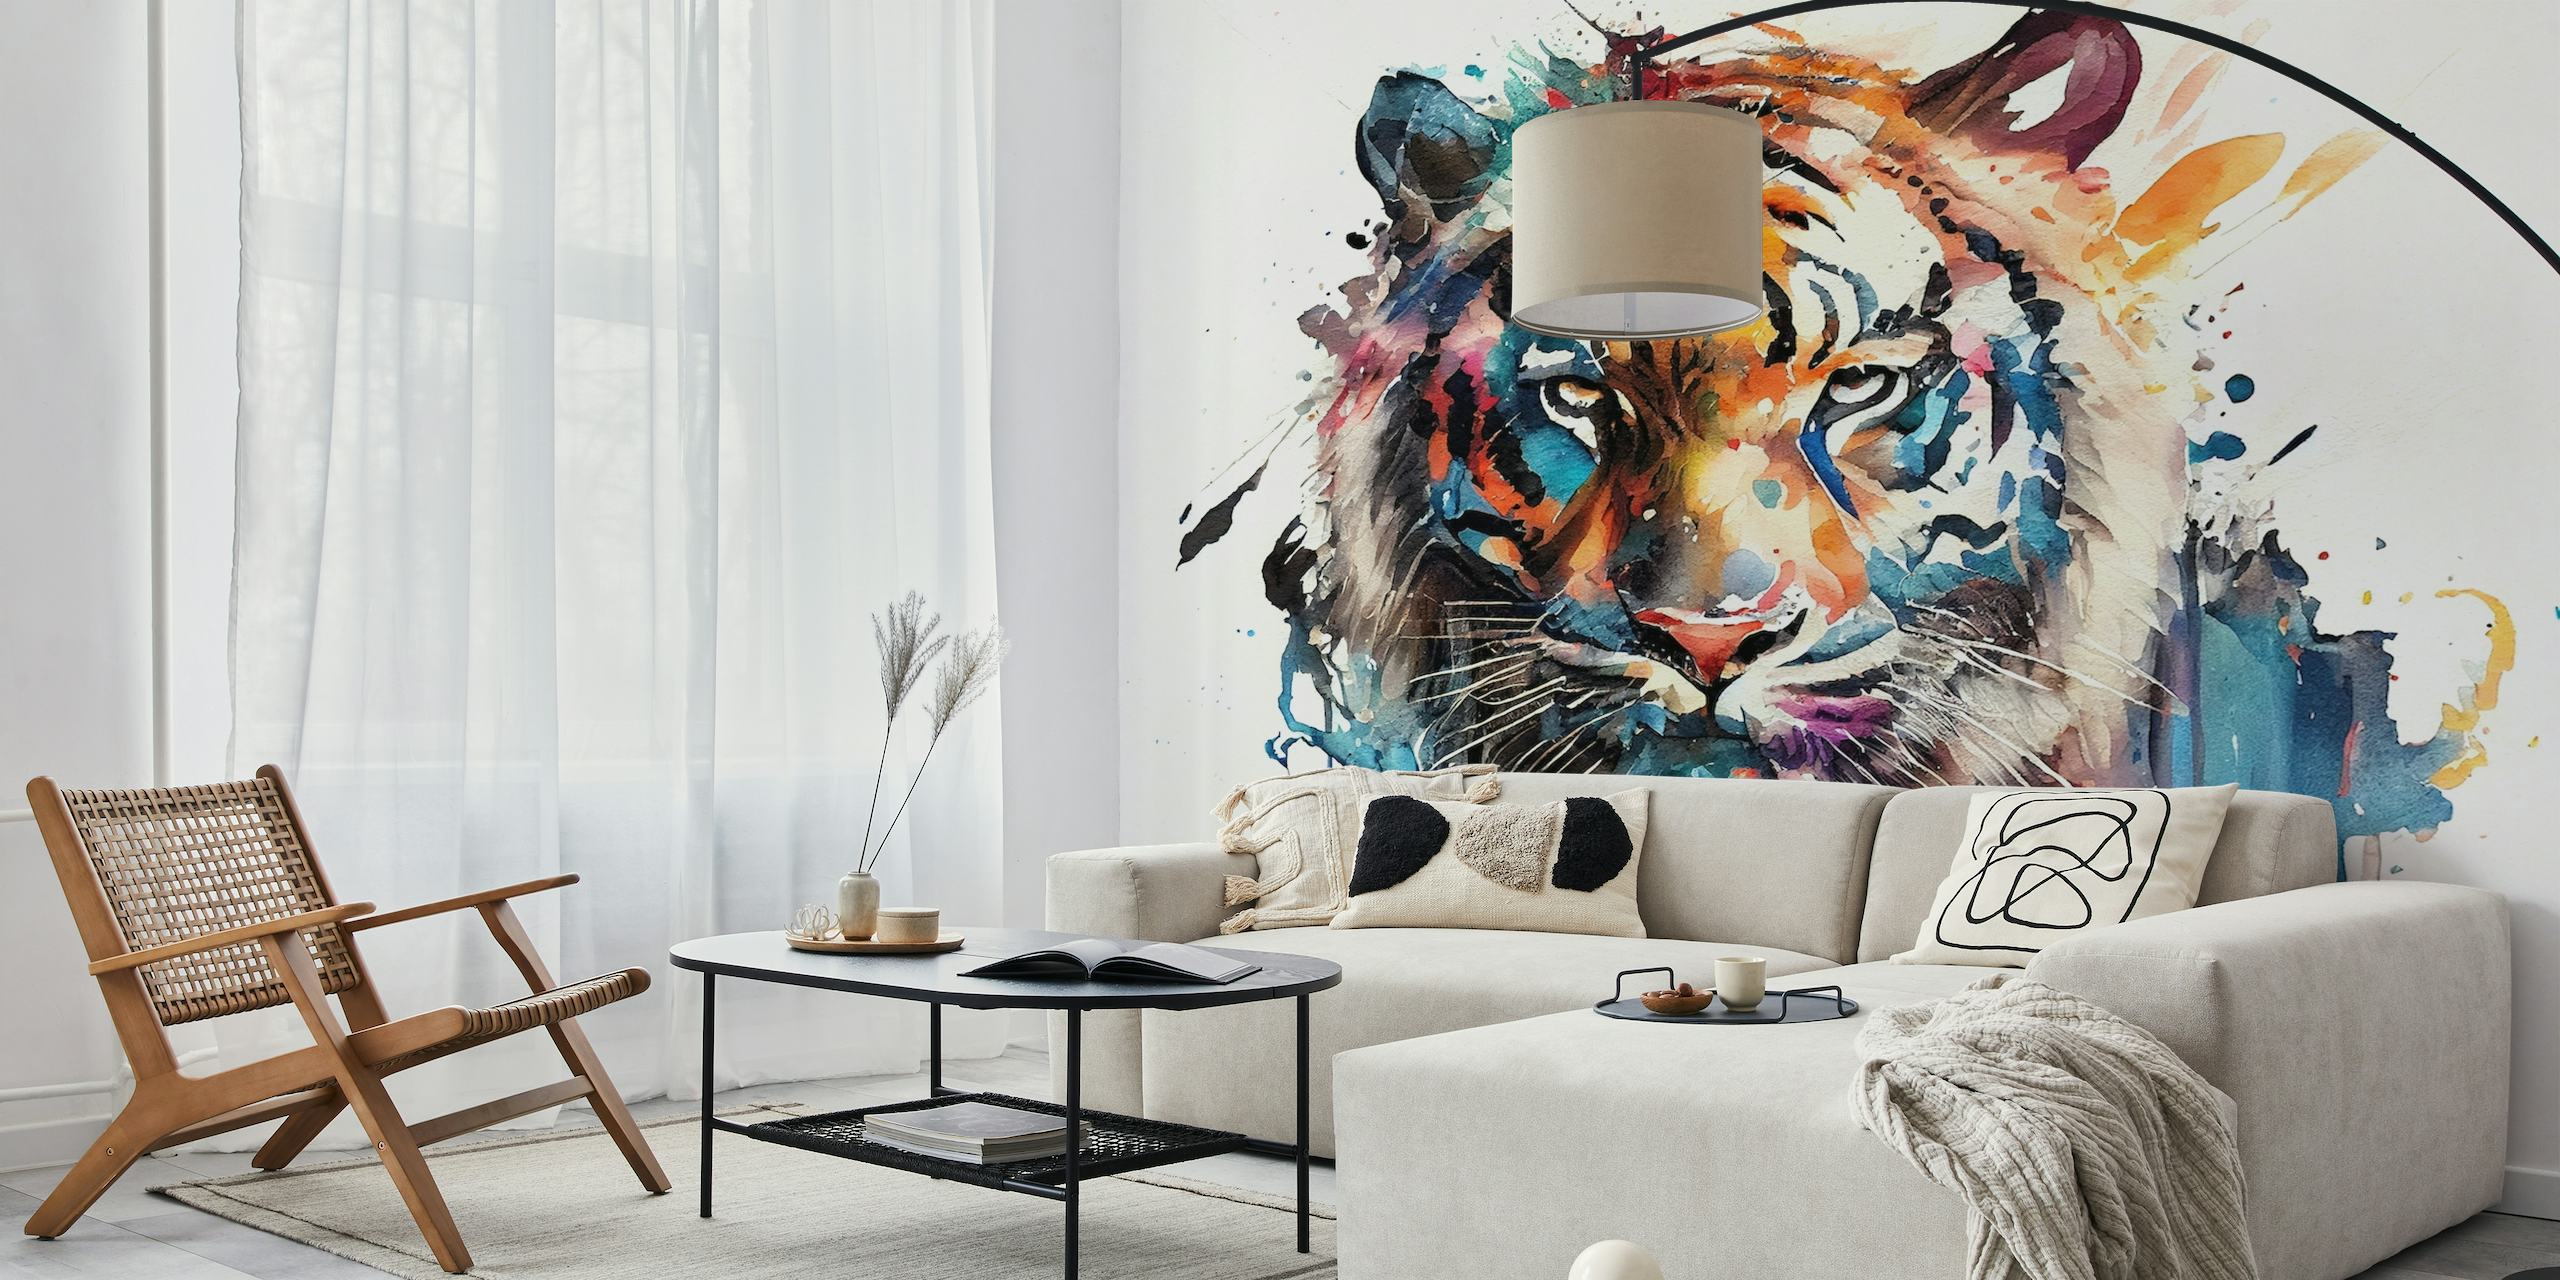 Una pintura en acuarela de un tigre con una mezcla de colores vibrantes sobre un fondo blanco, convertida en mural de pared.